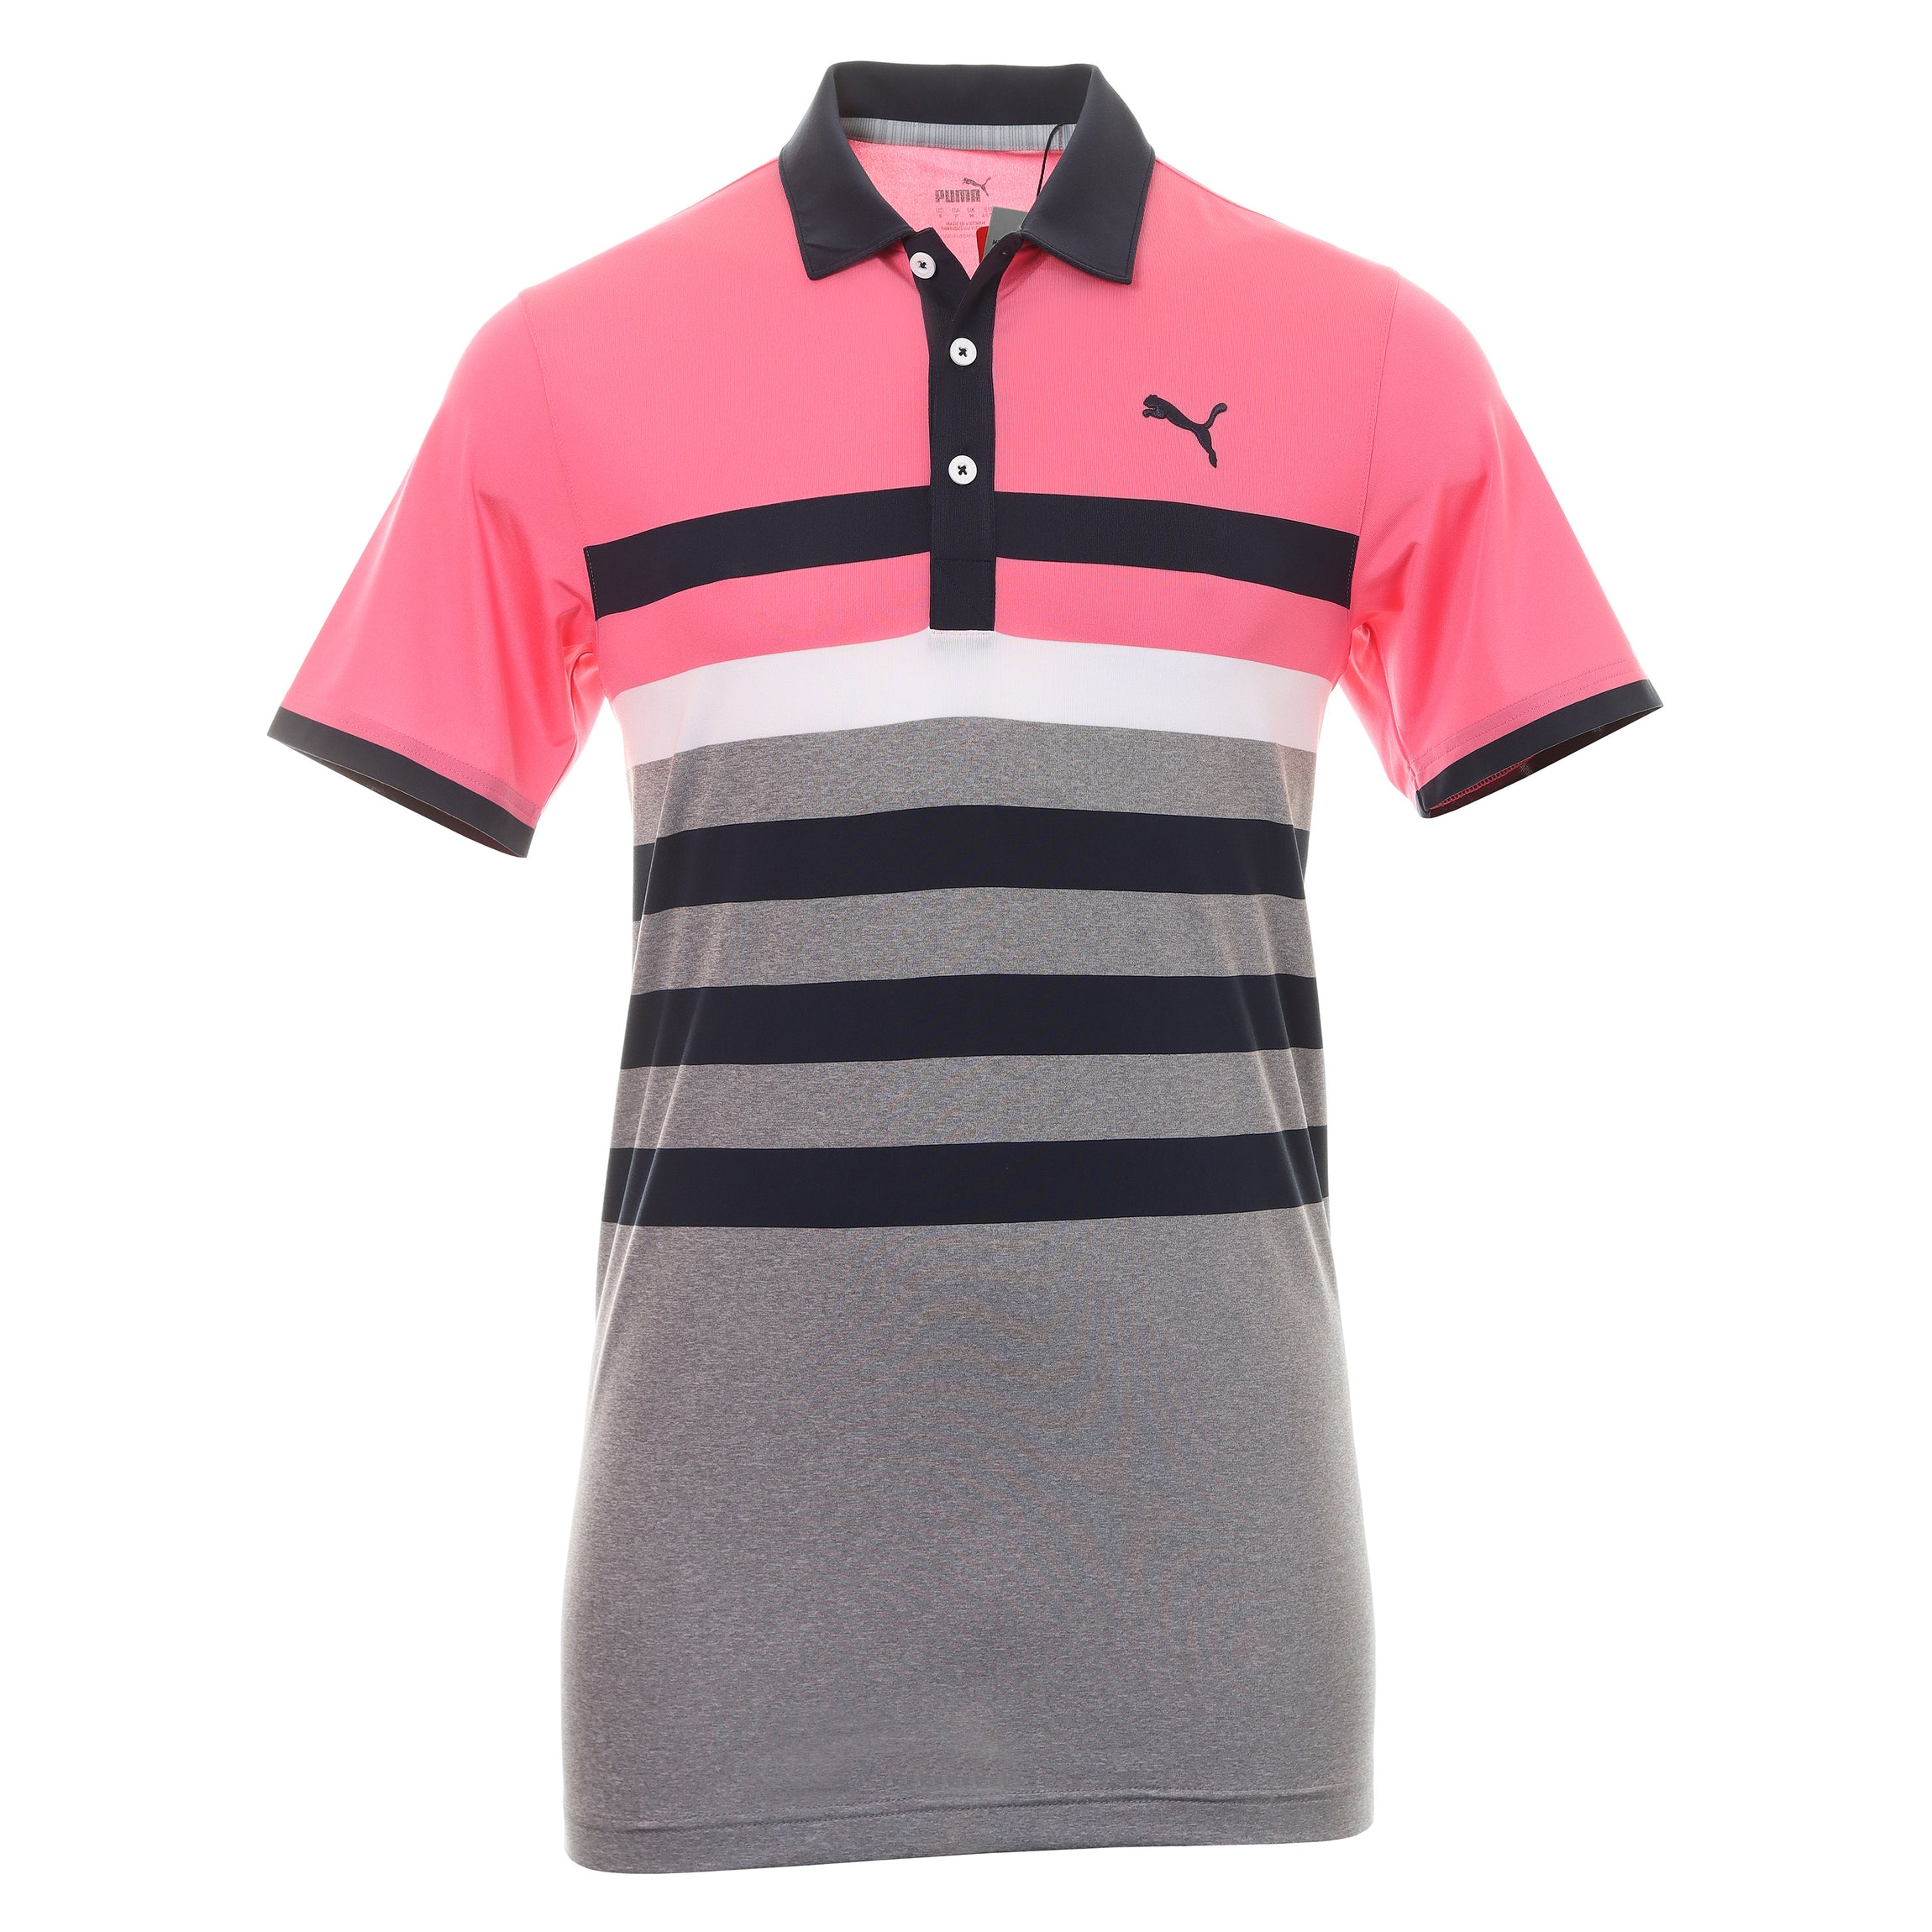 Puma Golf T-shirt | vlr.eng.br